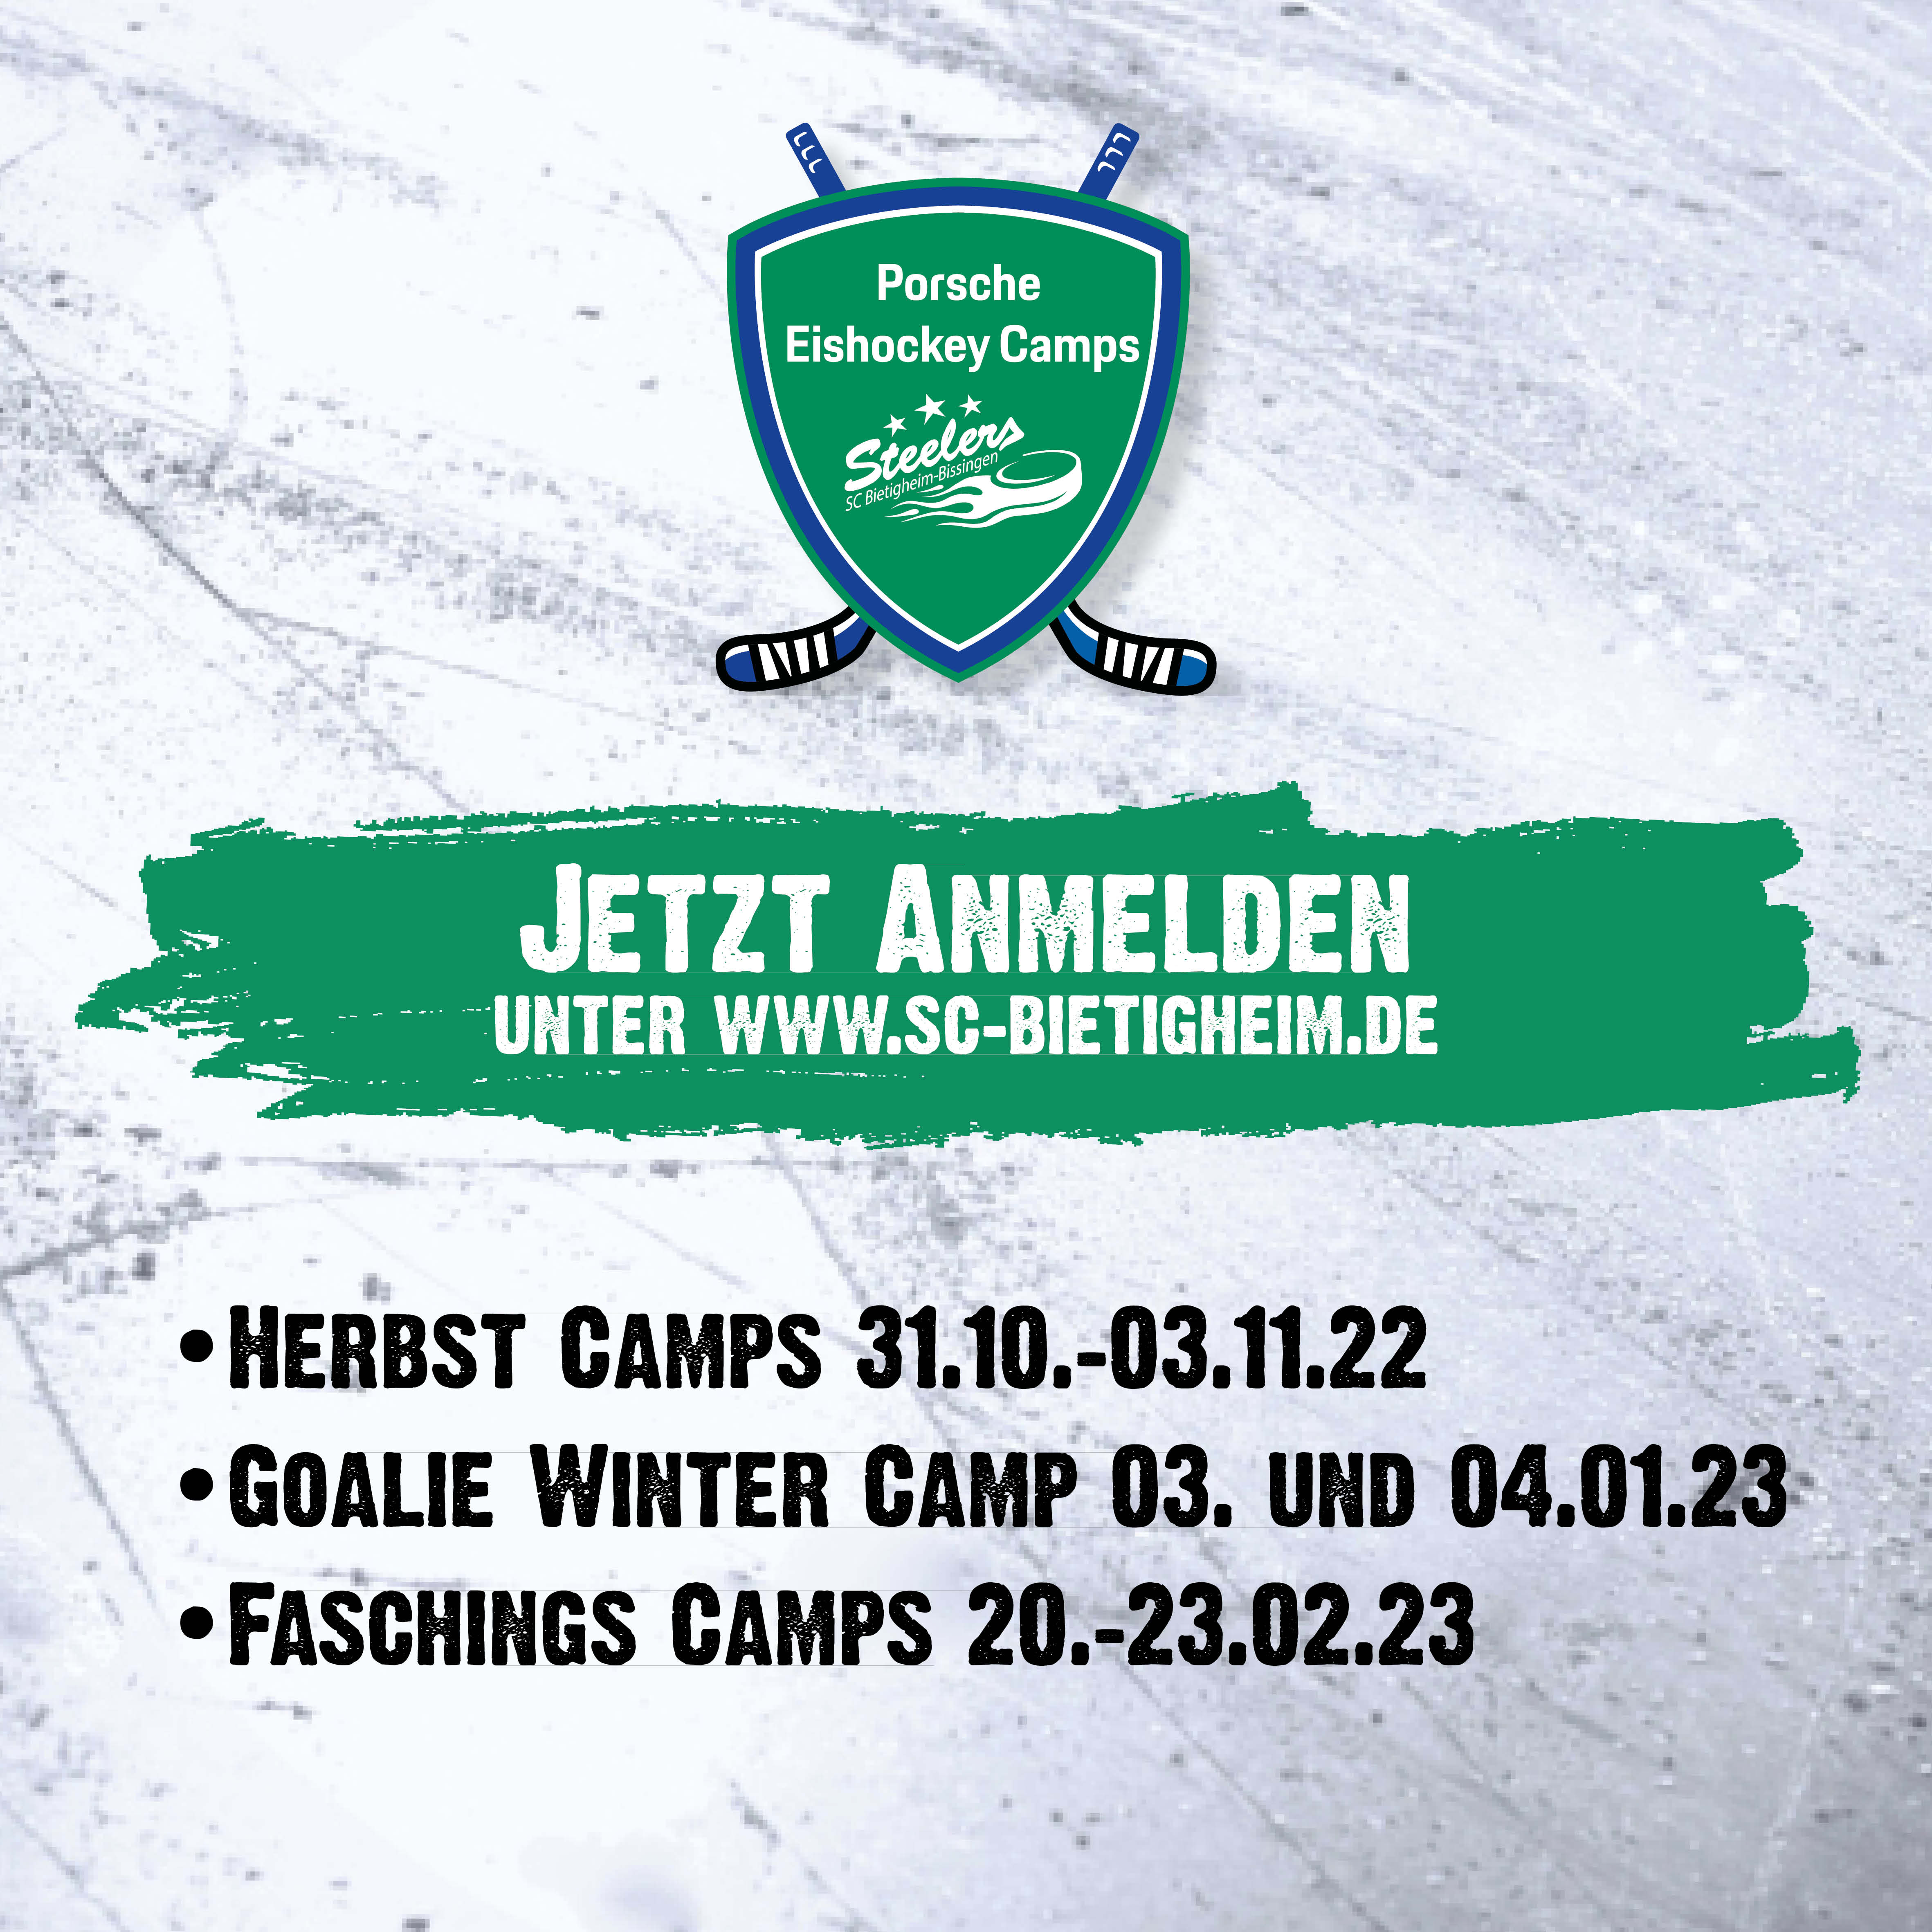 Porsche Eishockey Camps 2022/23 - Jetzt Anmelden Bild